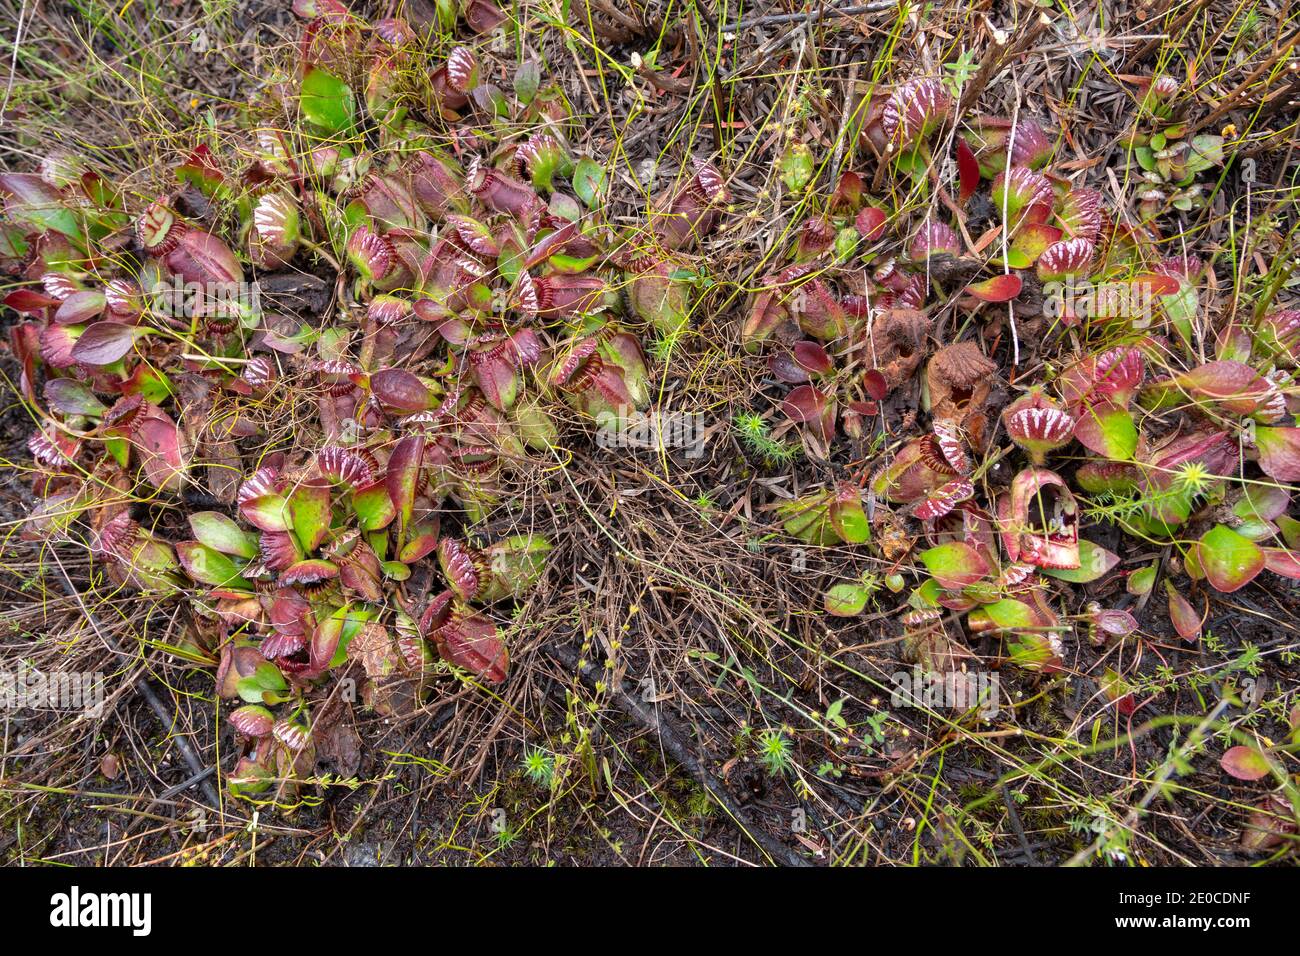 Grande grumo della pianta carnivora Cephalotus follicularis, la pianta di Albany Pitcher trovato a nord della Danimarca nell'Australia occidentale Foto Stock